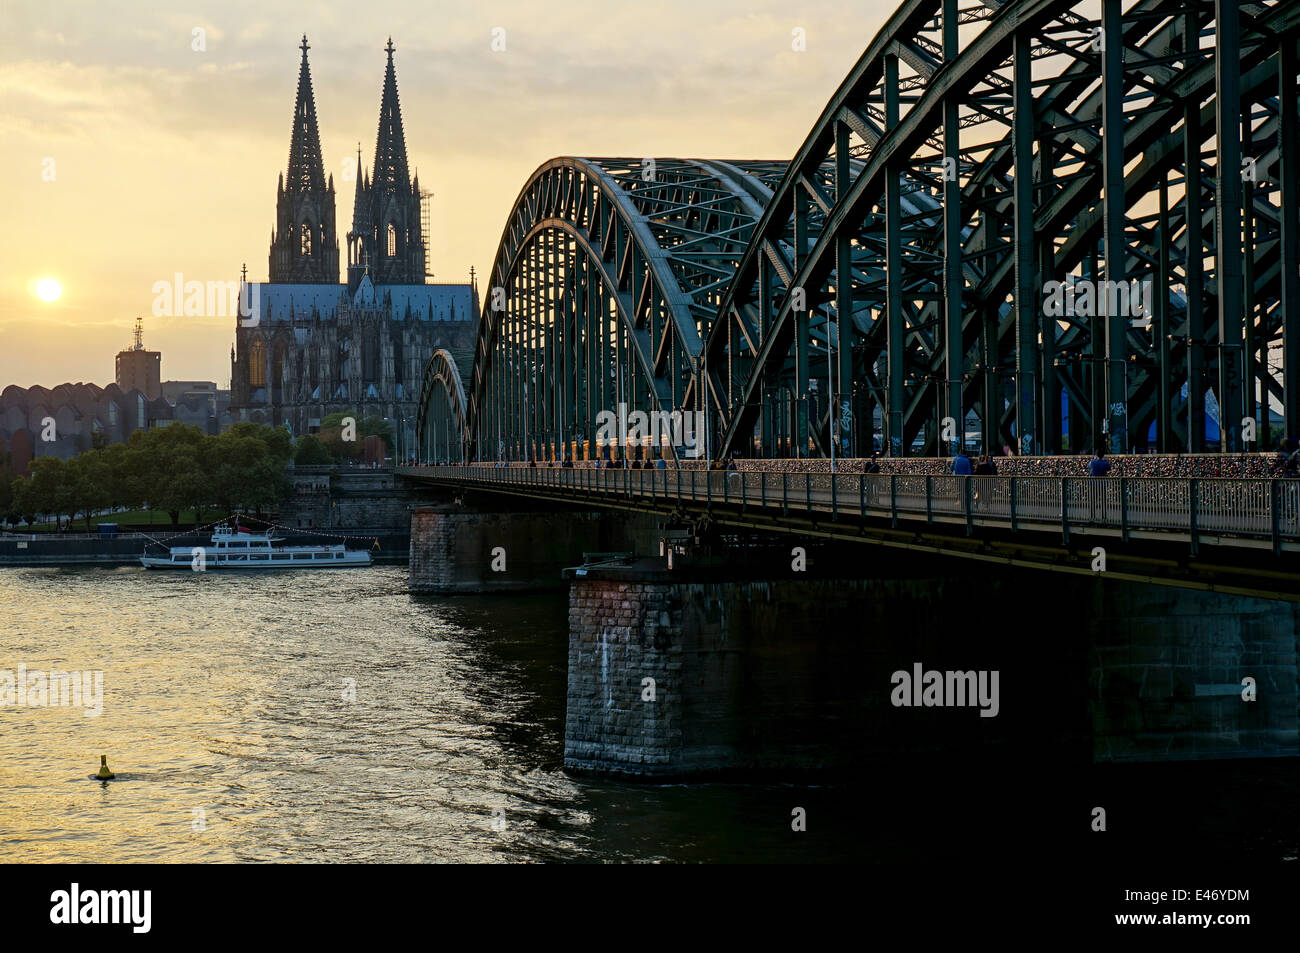 Germania: Hohenzollern ponte con la cattedrale di Colonia. Foto dal 23 settembre 2013. Foto Stock